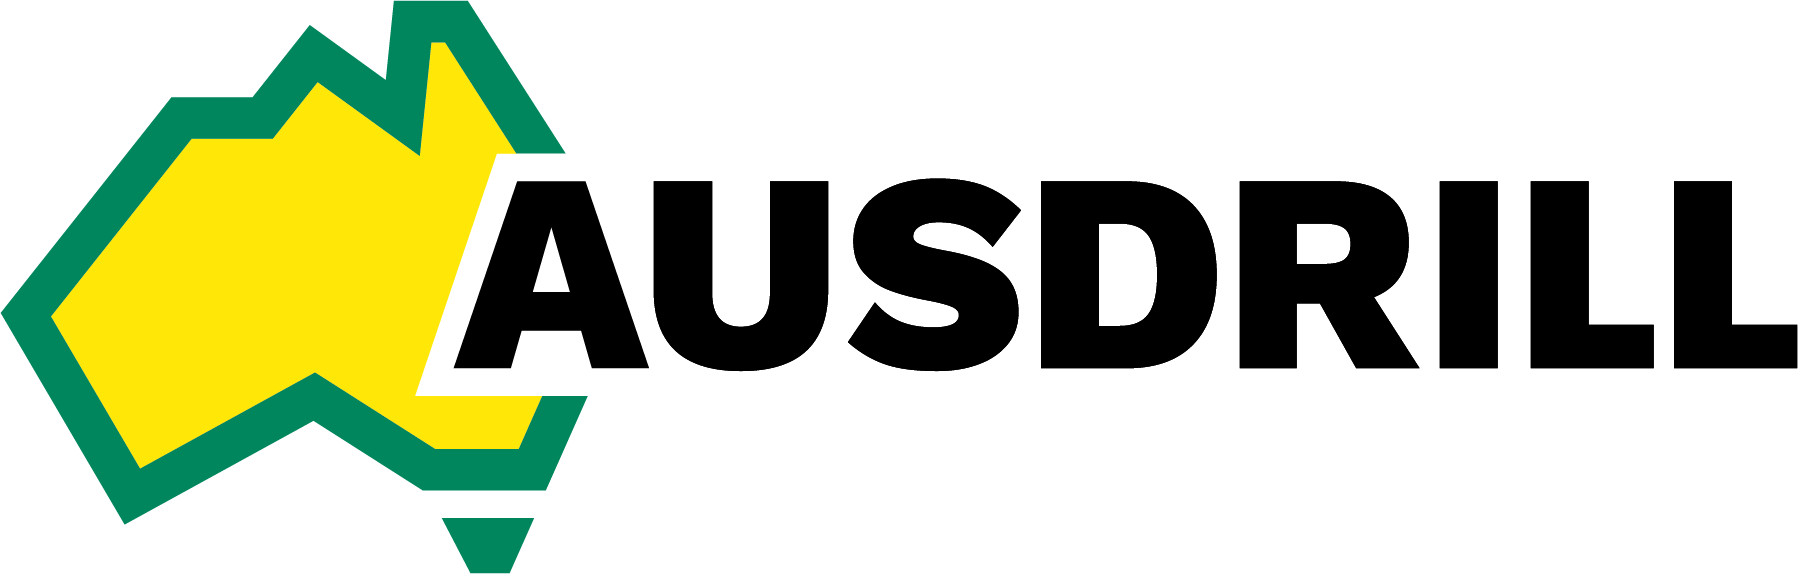 AUSD-L-Colour